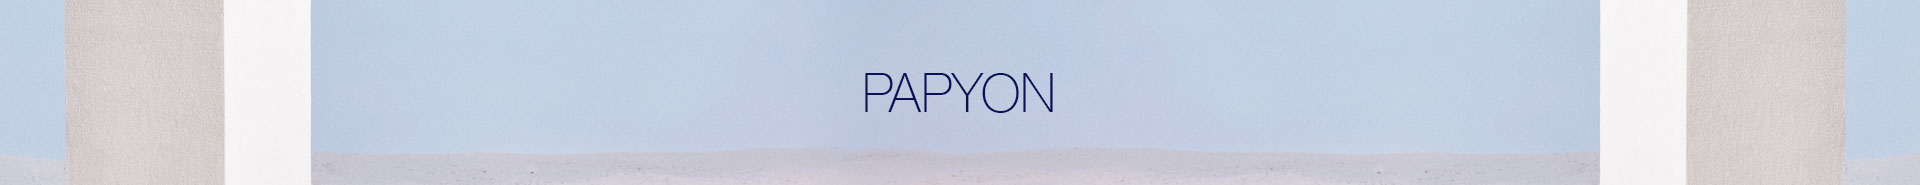 papyon_1920x185.jpg (27 KB)